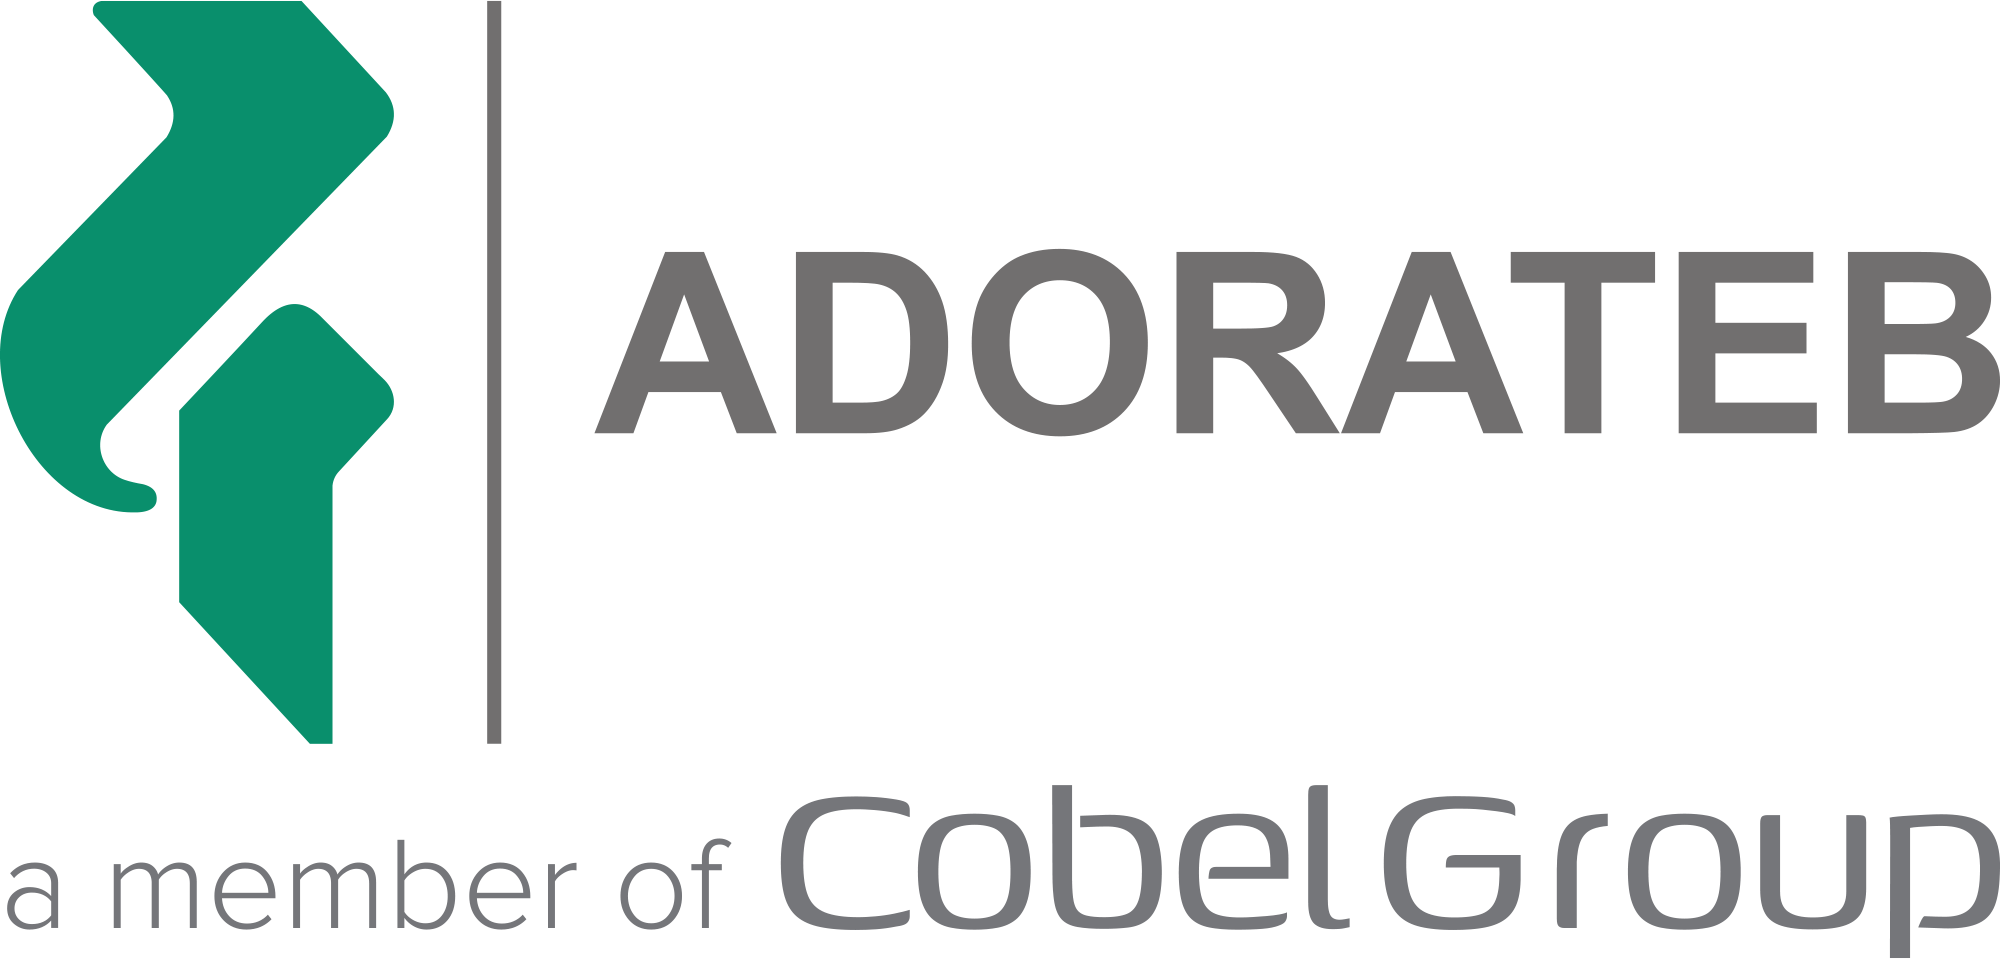 حسابرس داخلی | Internal Auditor - آدوراطب | Adorateb